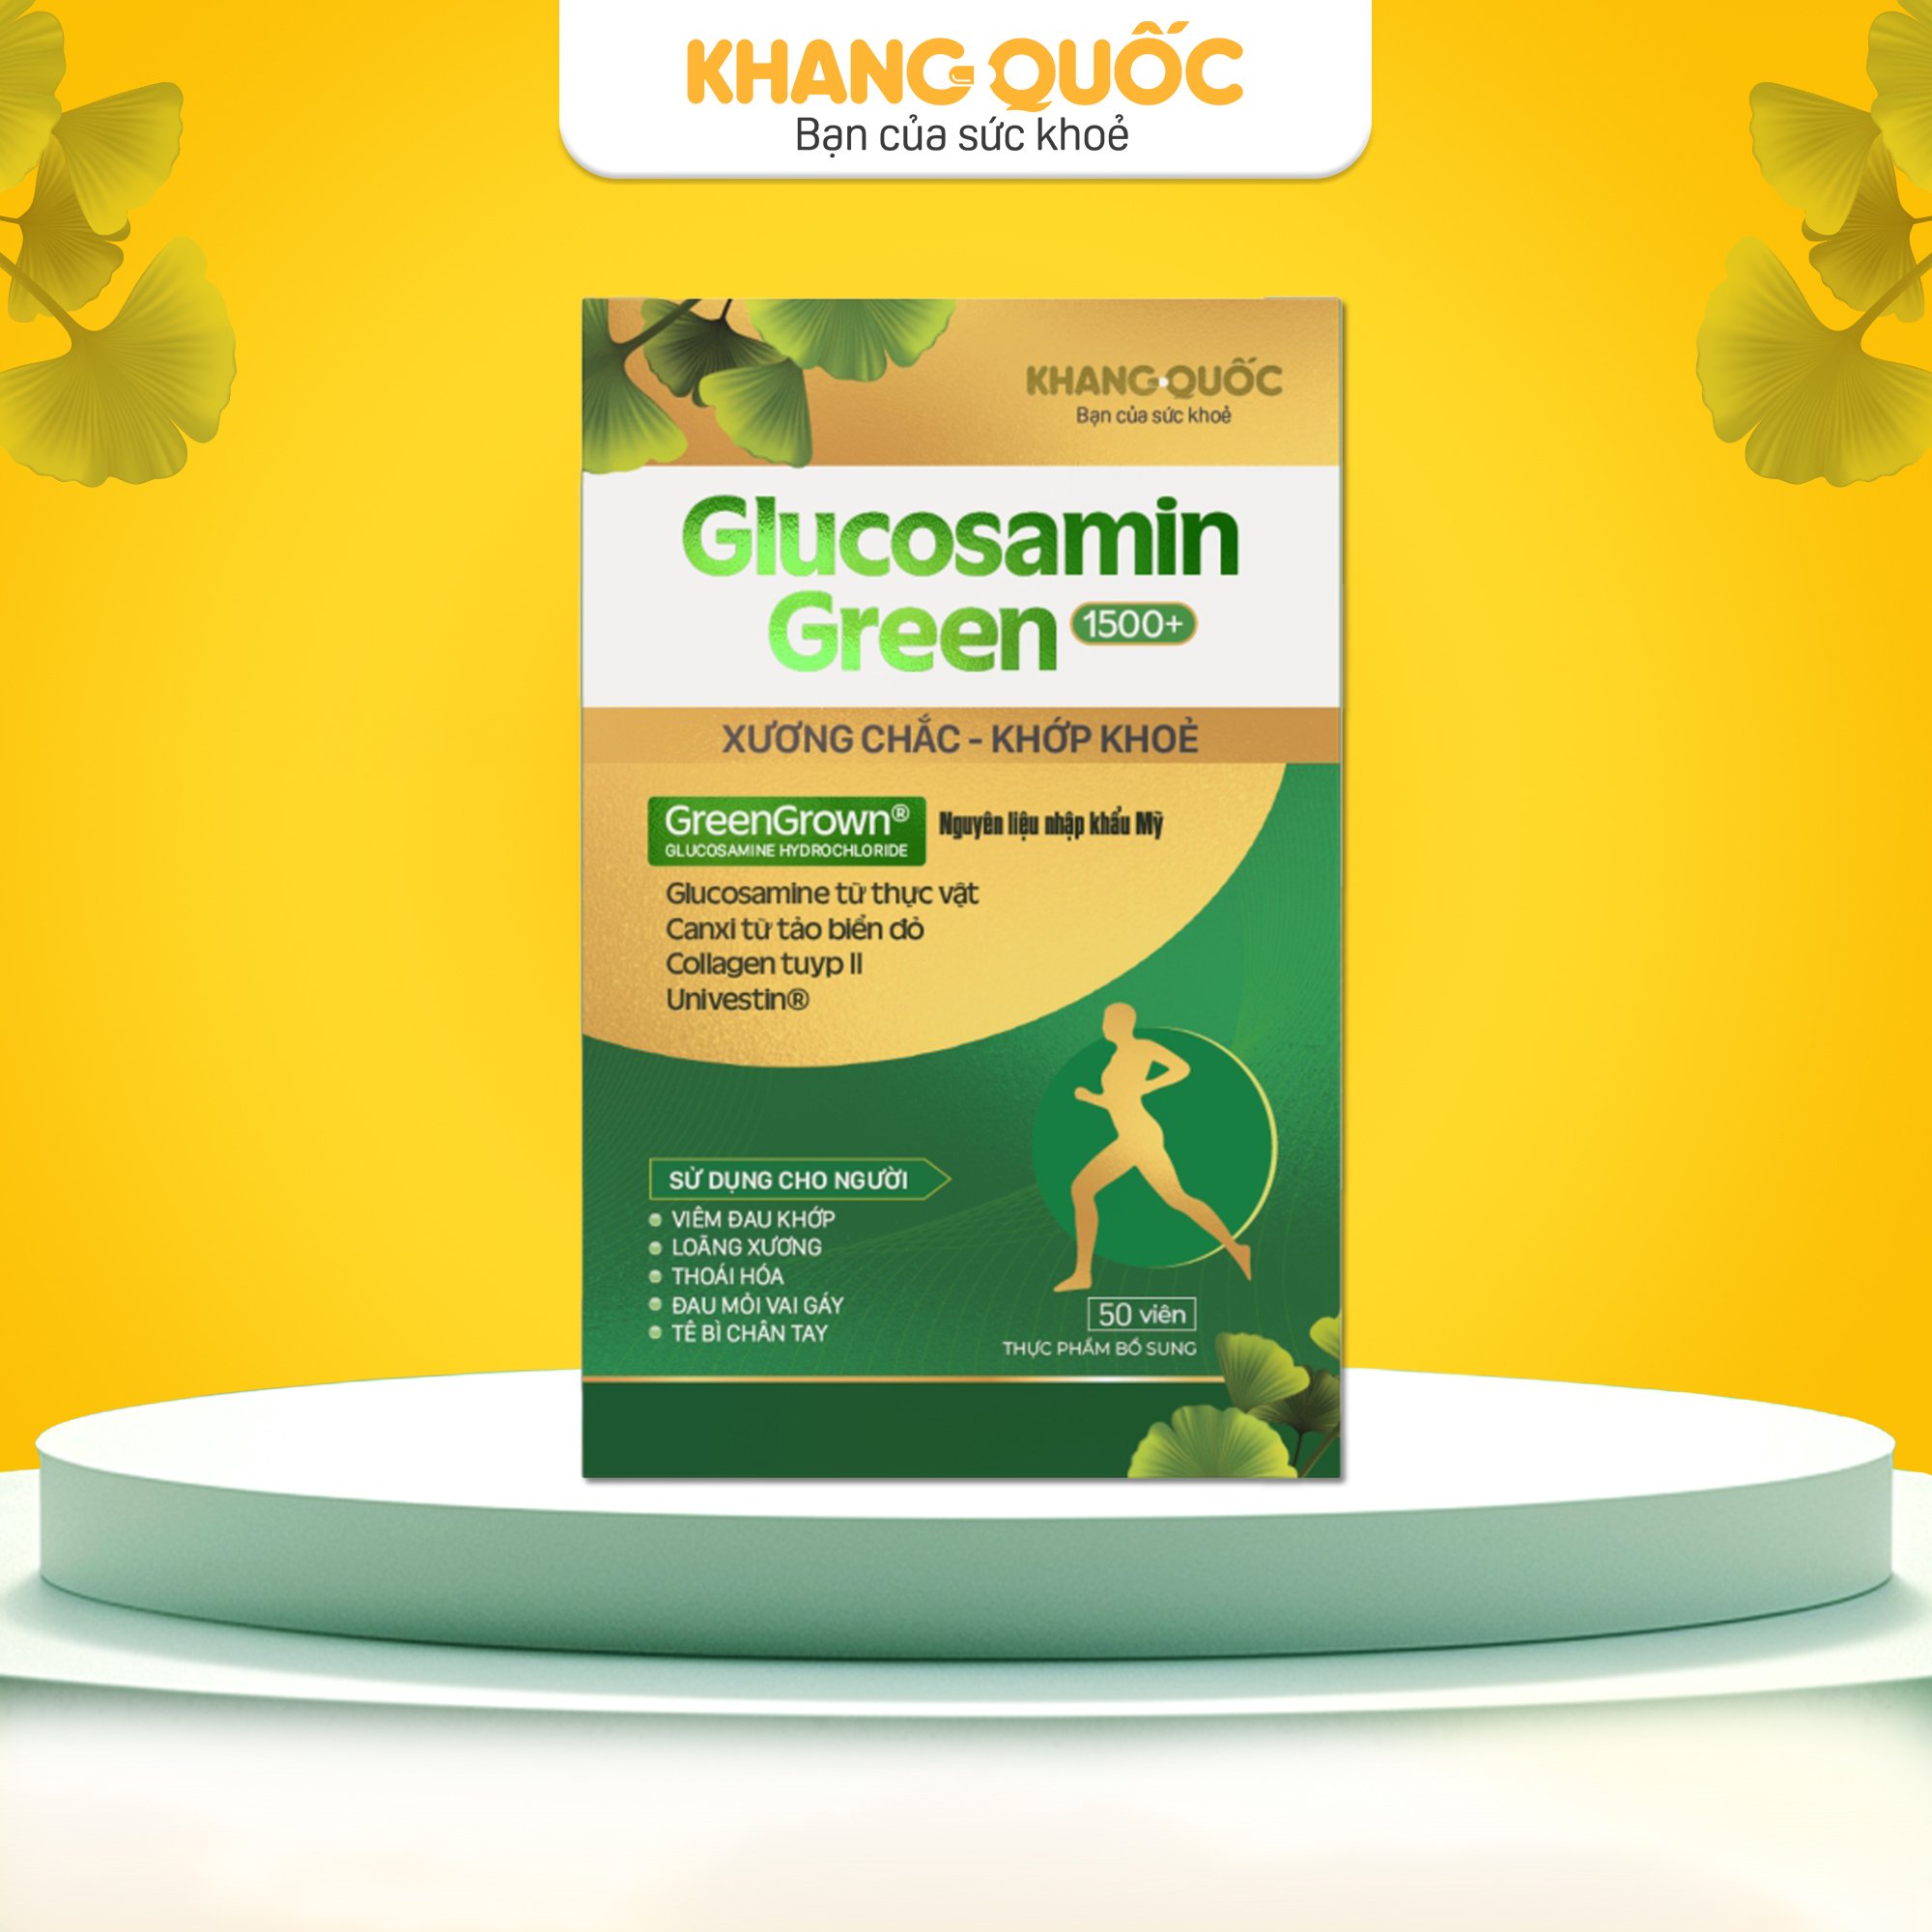 Glucosamin Green 1500+ Xương chắc khớp khỏe từ Glucosamin thực vật